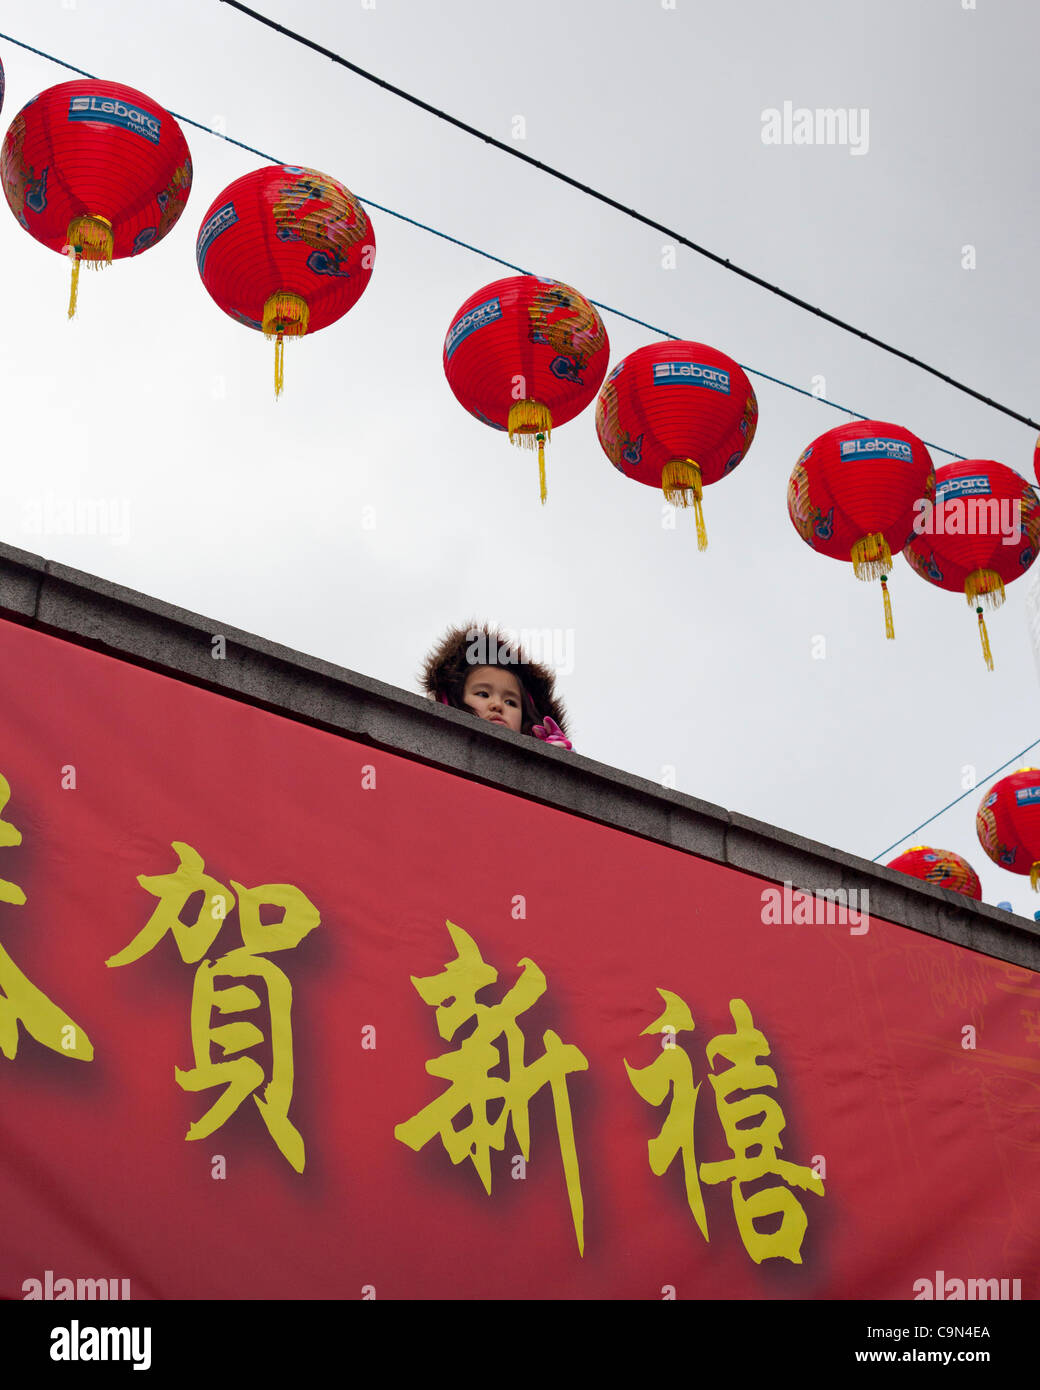 29.1.12, Londres.Enfant regarde le Nouvel An chinois à Trafalgar Square, Londres. Banque D'Images